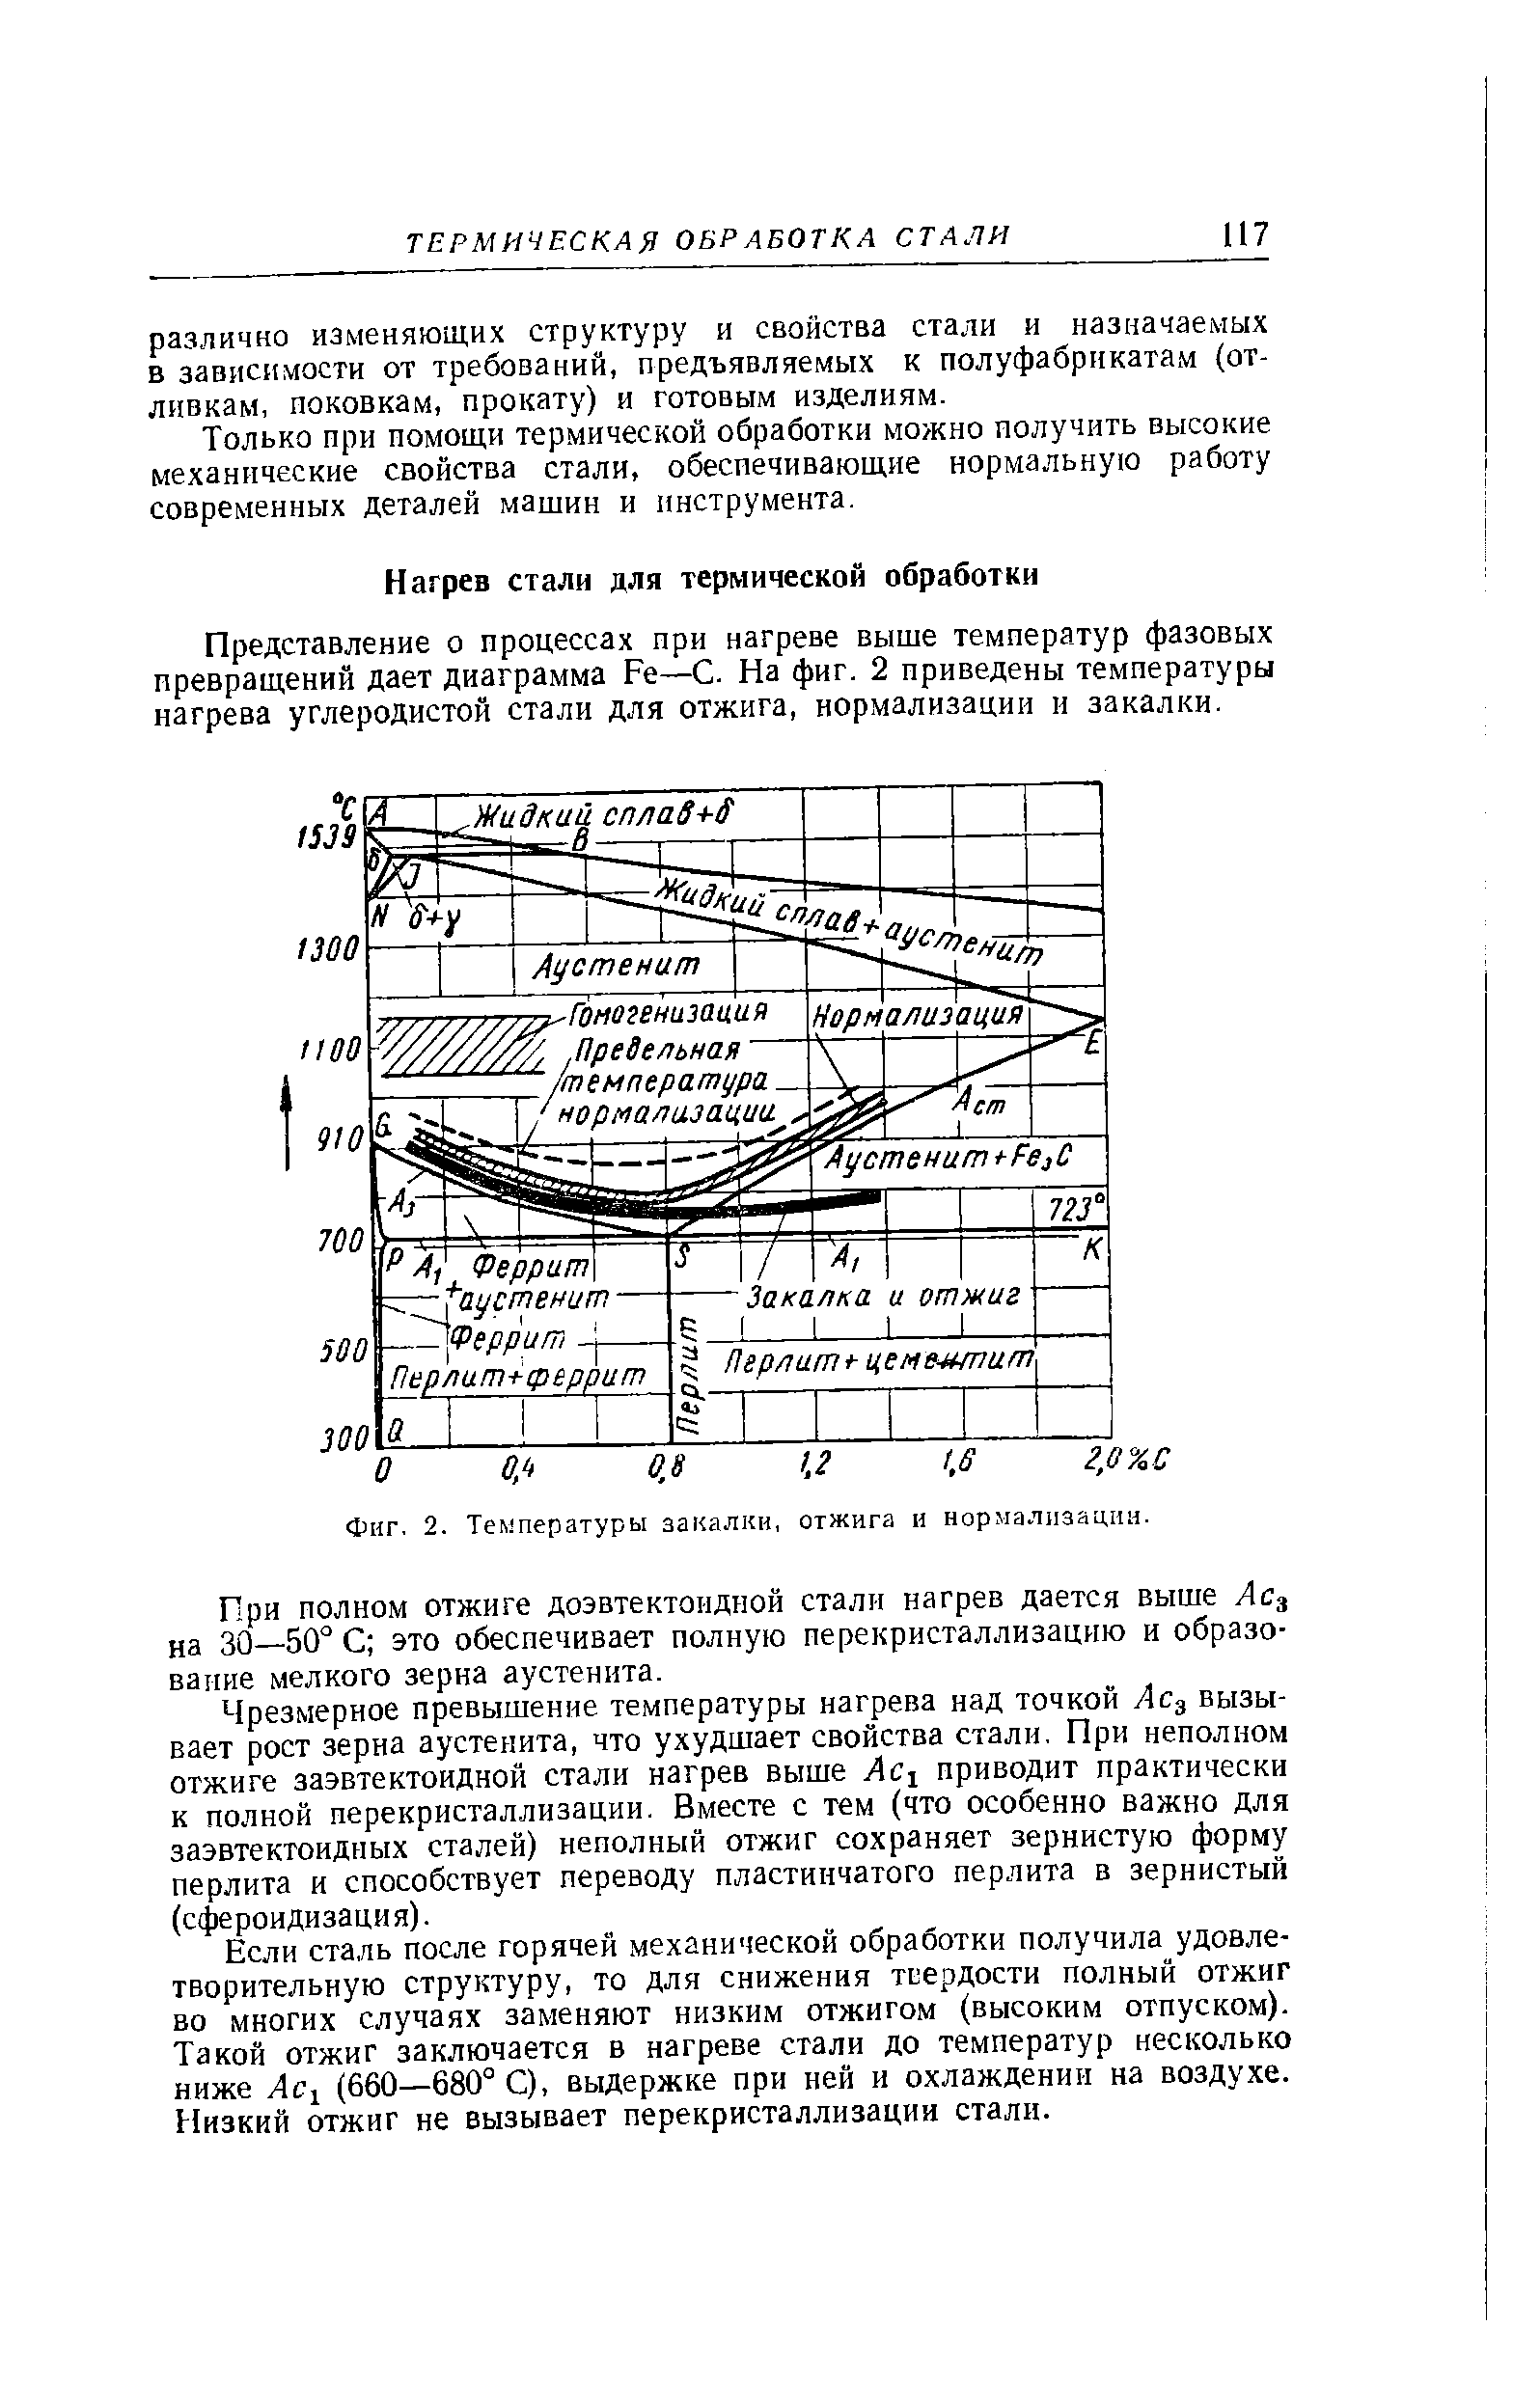 Представление о процессах при нагреве выше температур фазовых превращений дает диаграмма Fe—С. На фиг. 2 приведены температуры нагрева углеродистой стали для отжига, нормализации и закалки.
